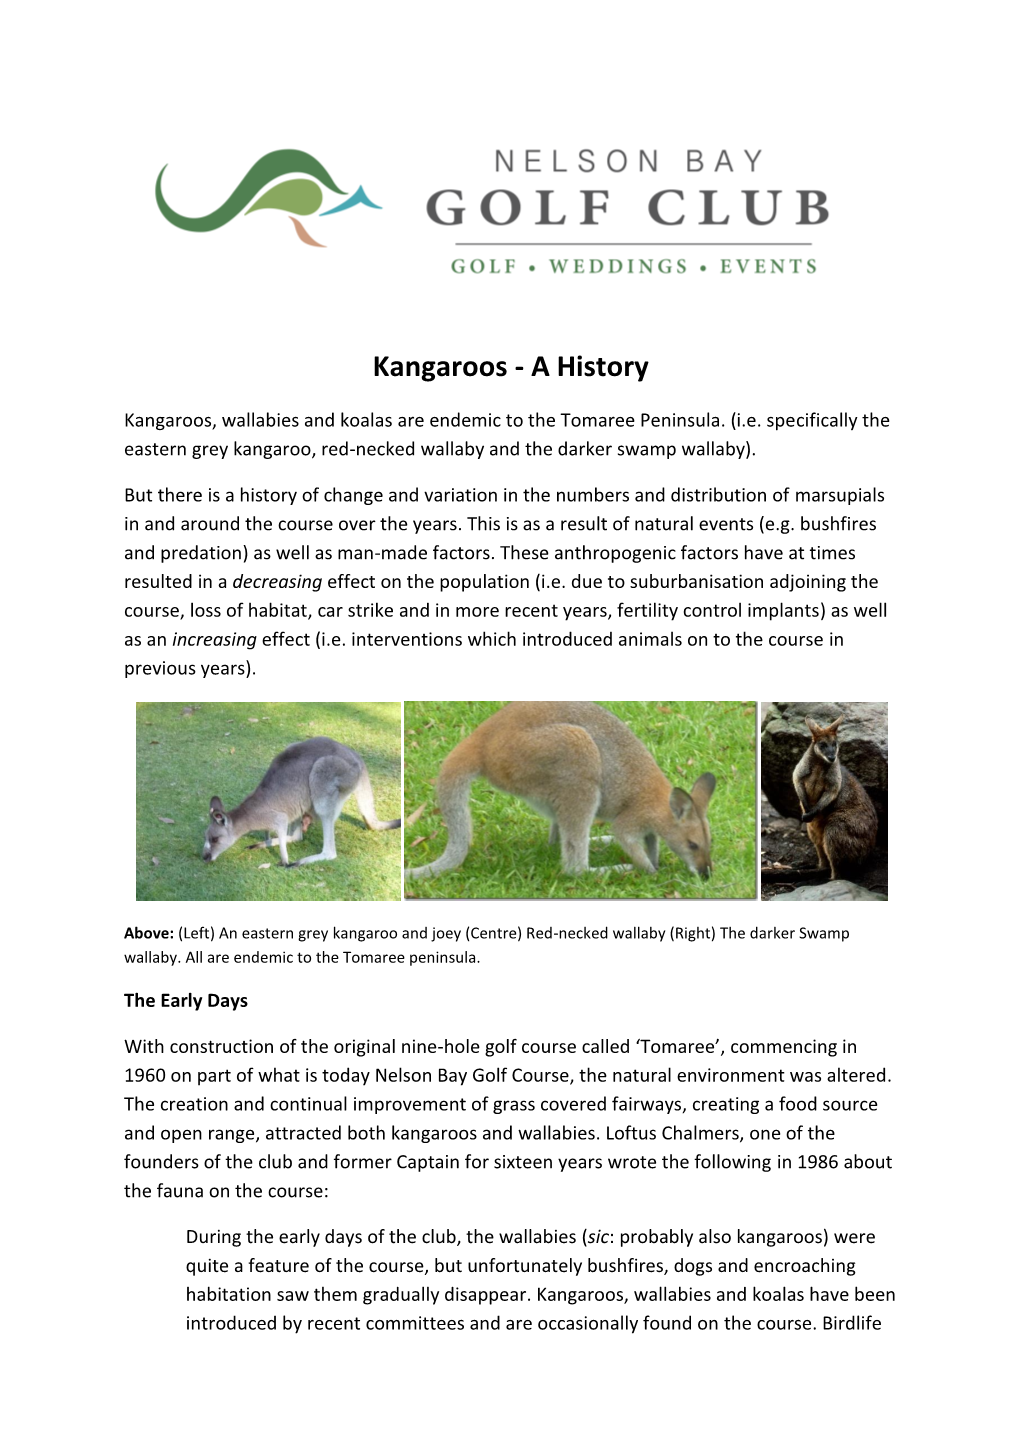 Kangaroos - a History